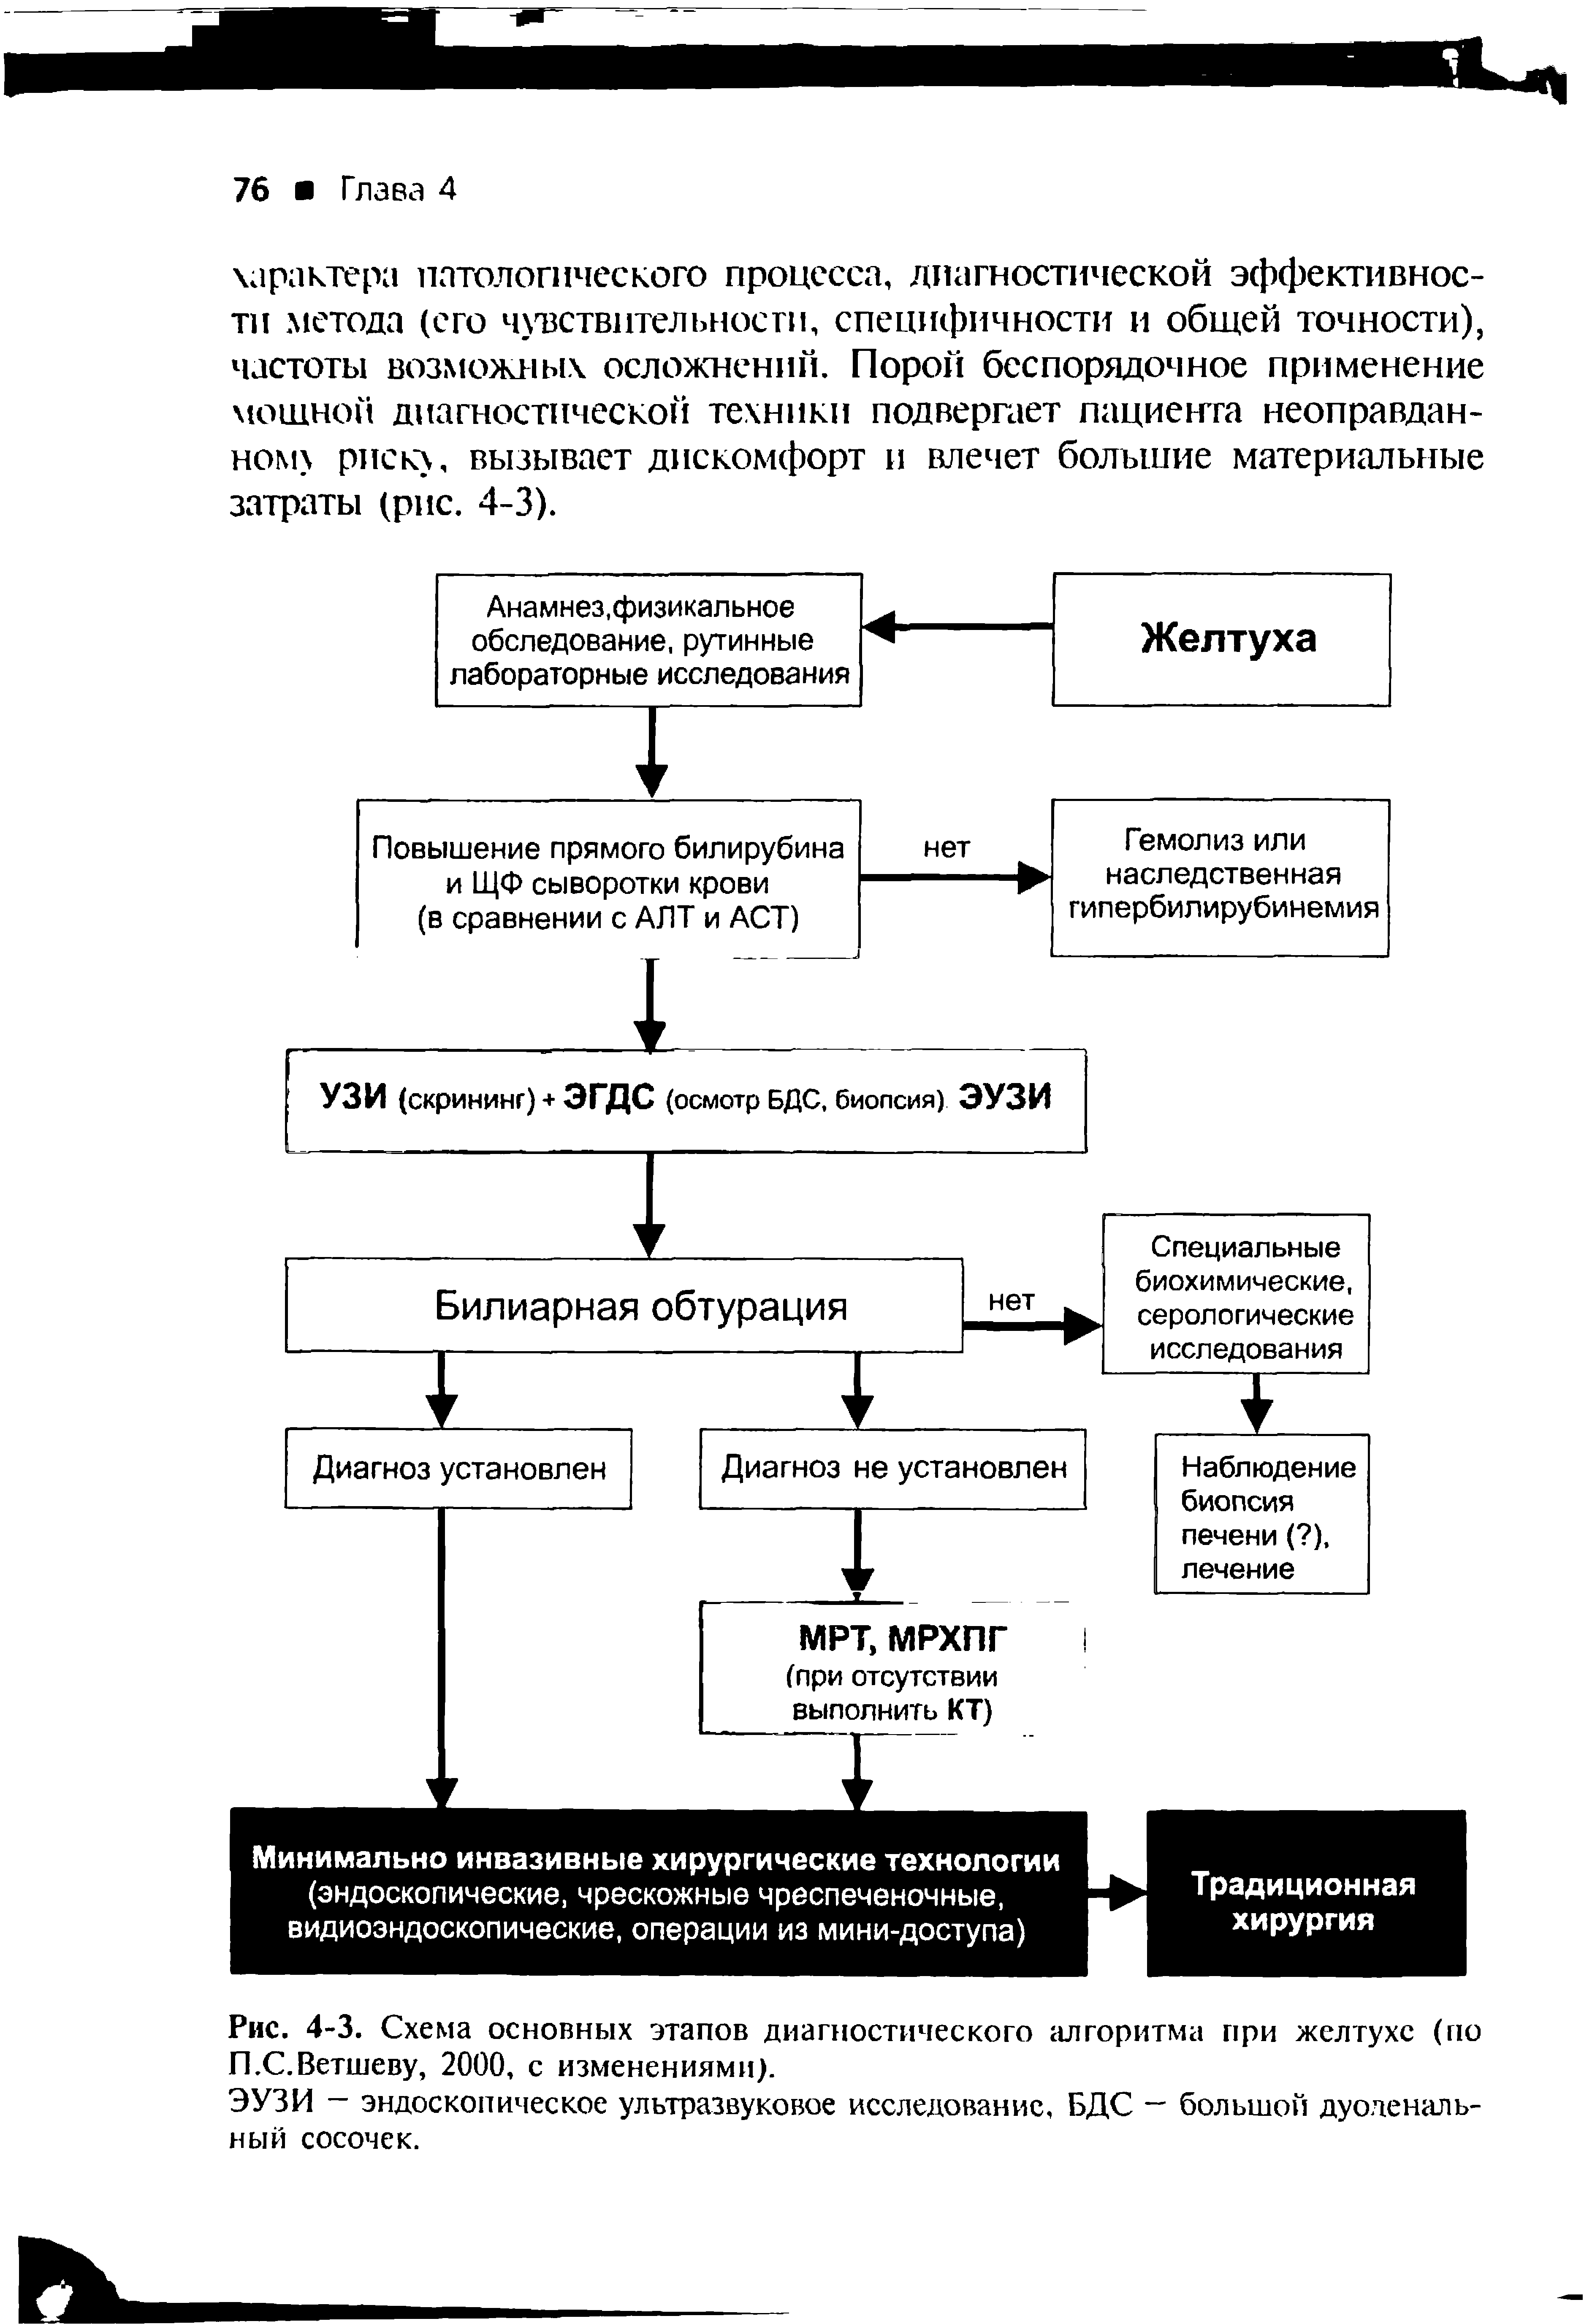 Рис. 4-3. Схема основных этапов диагностического алгоритма при желтухе (по П.С.Ветшеву, 2000, с изменениями).